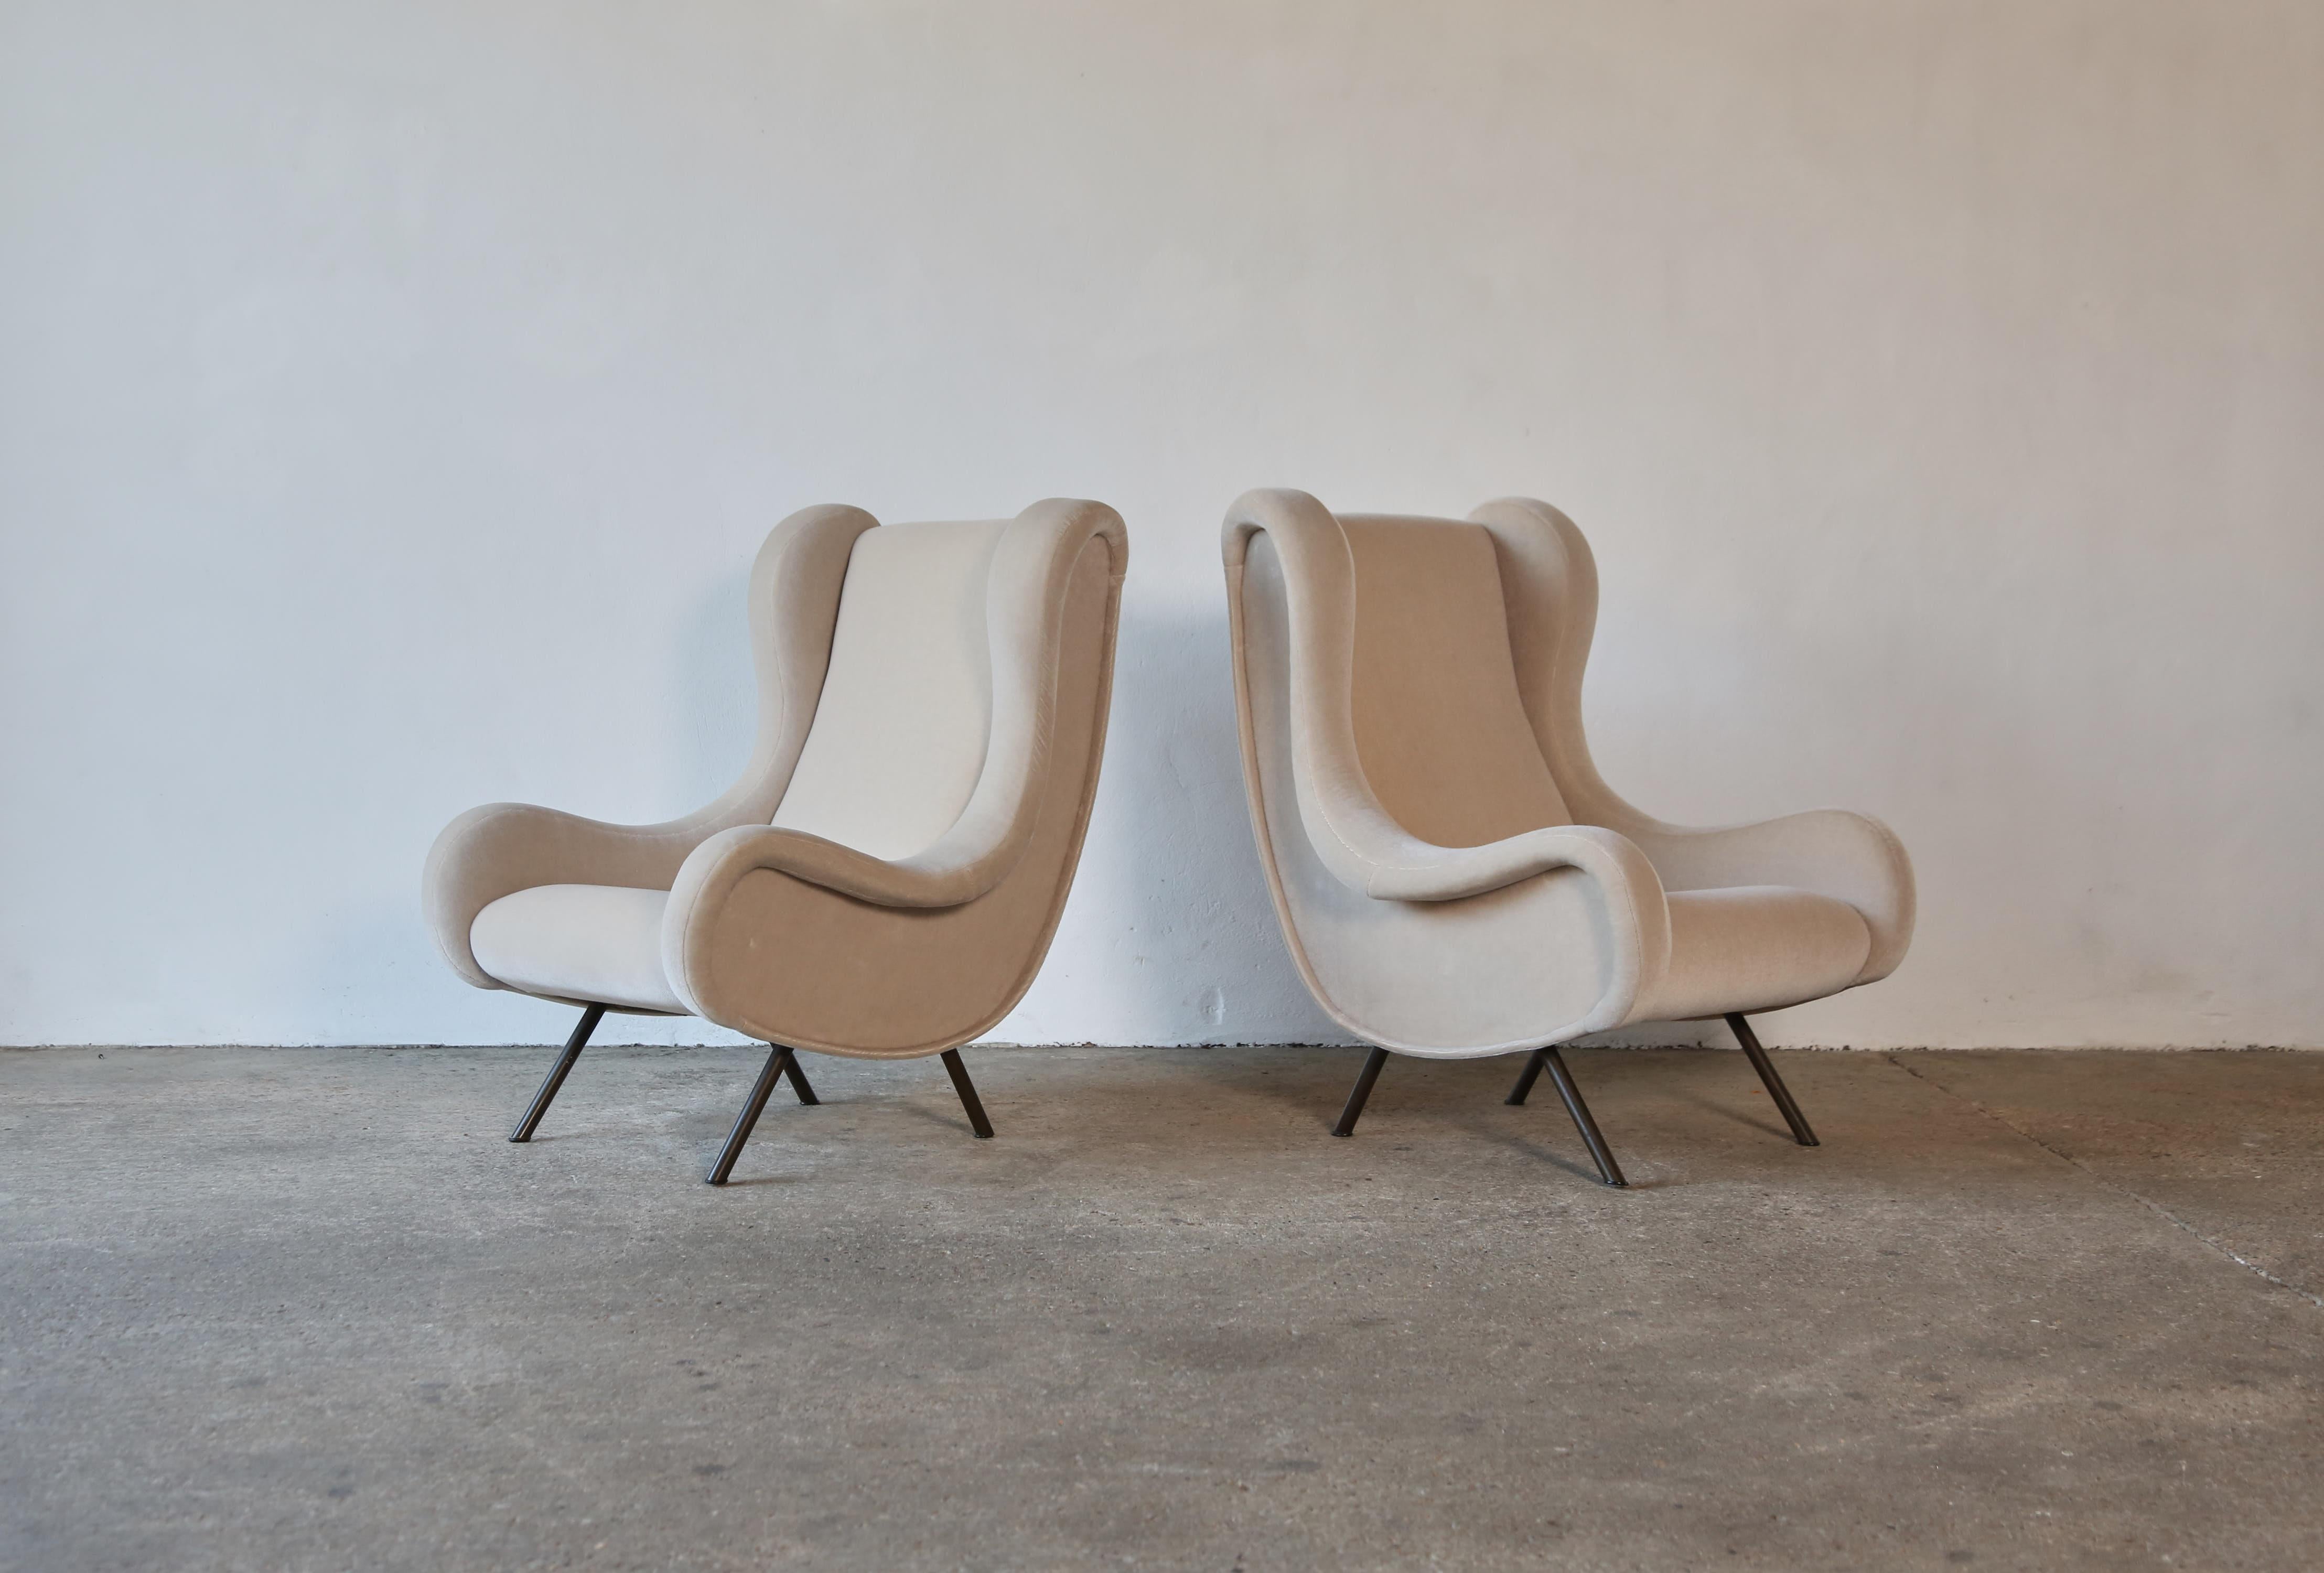 Paire de chaises seniors authentiques Marco Zanuso, Arflex, Italie, années 1960. Ces chaises ont été retapissées dans un velours de première qualité, ivoire, 100 % mohair. Expédition rapide dans le monde entier.



